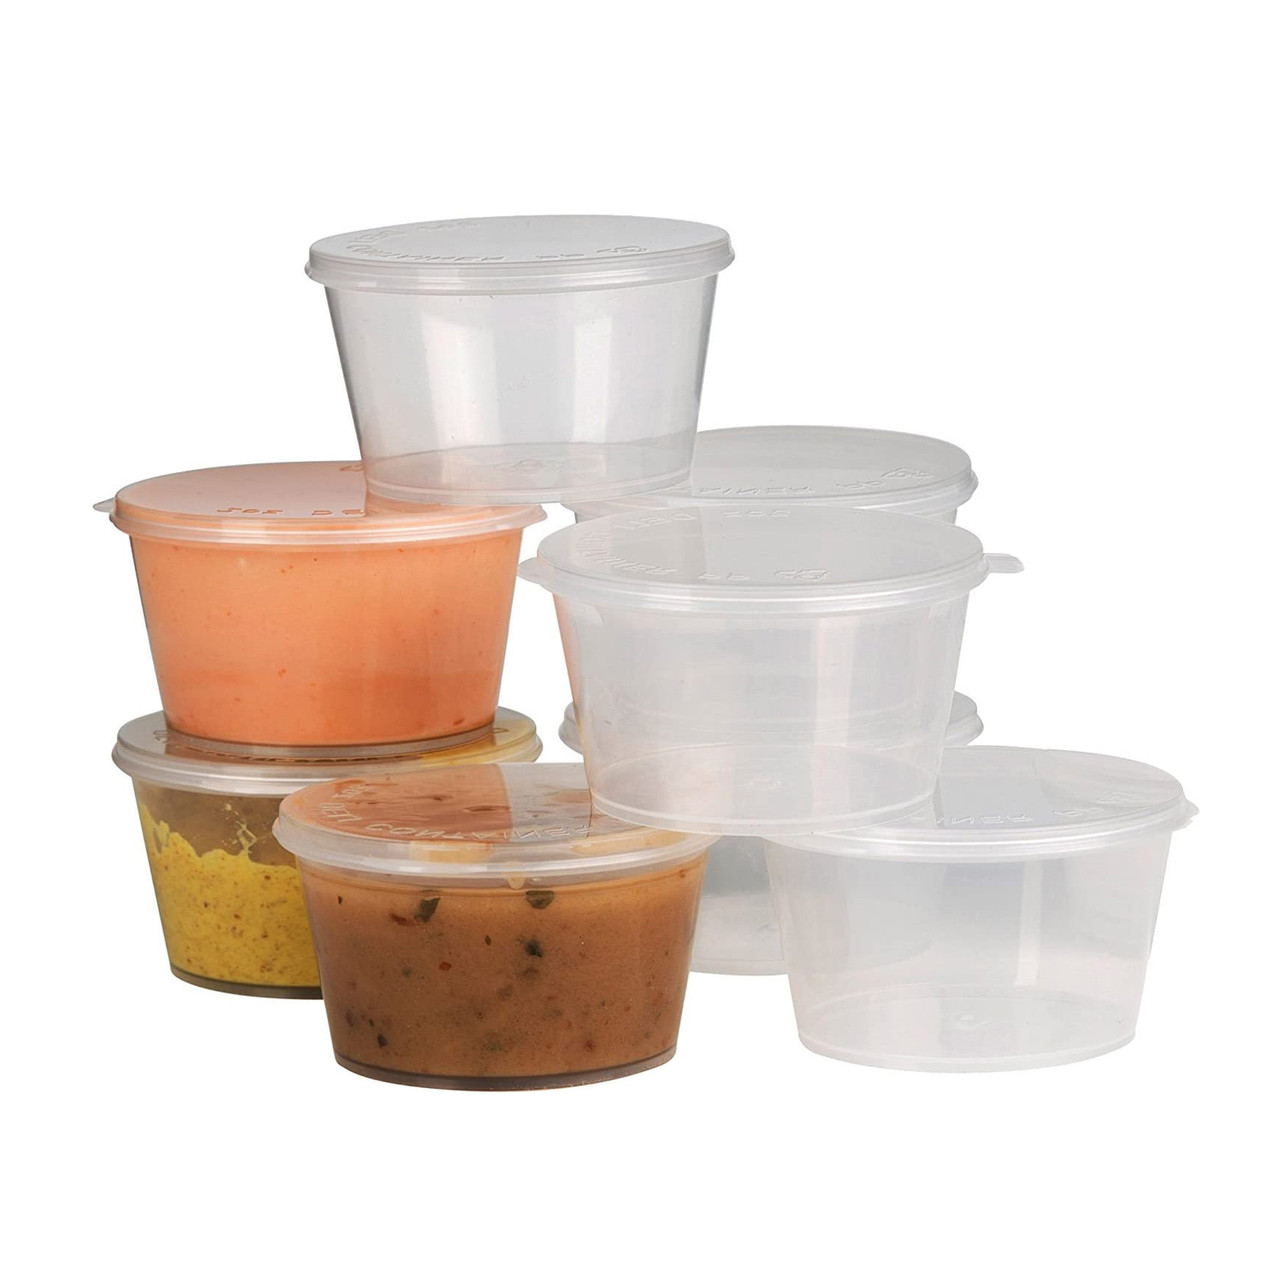 4oz Plastic Sauce Pots with Lids — Event Supplies